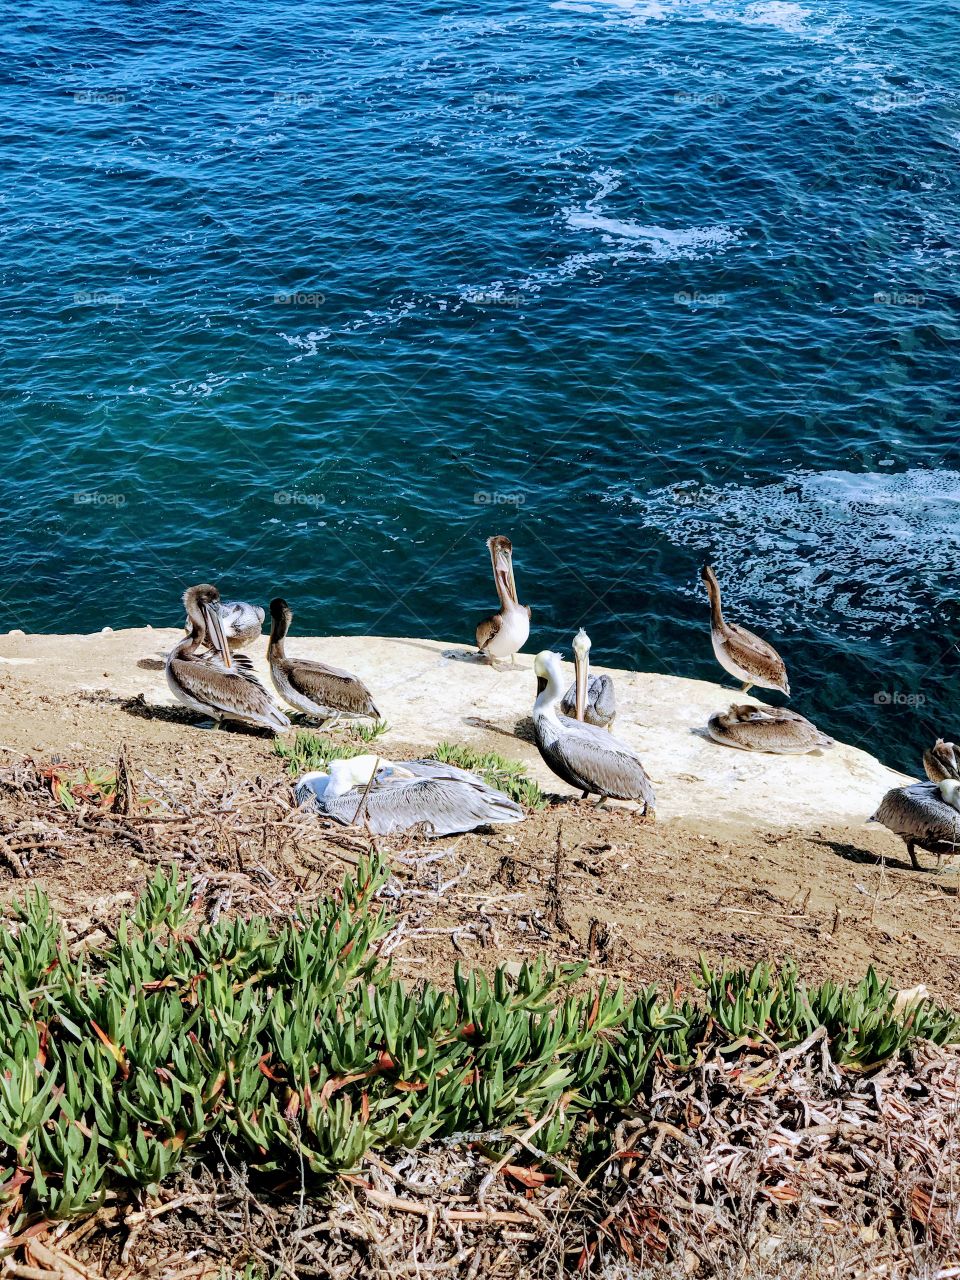 Just relaxing... #pelicans